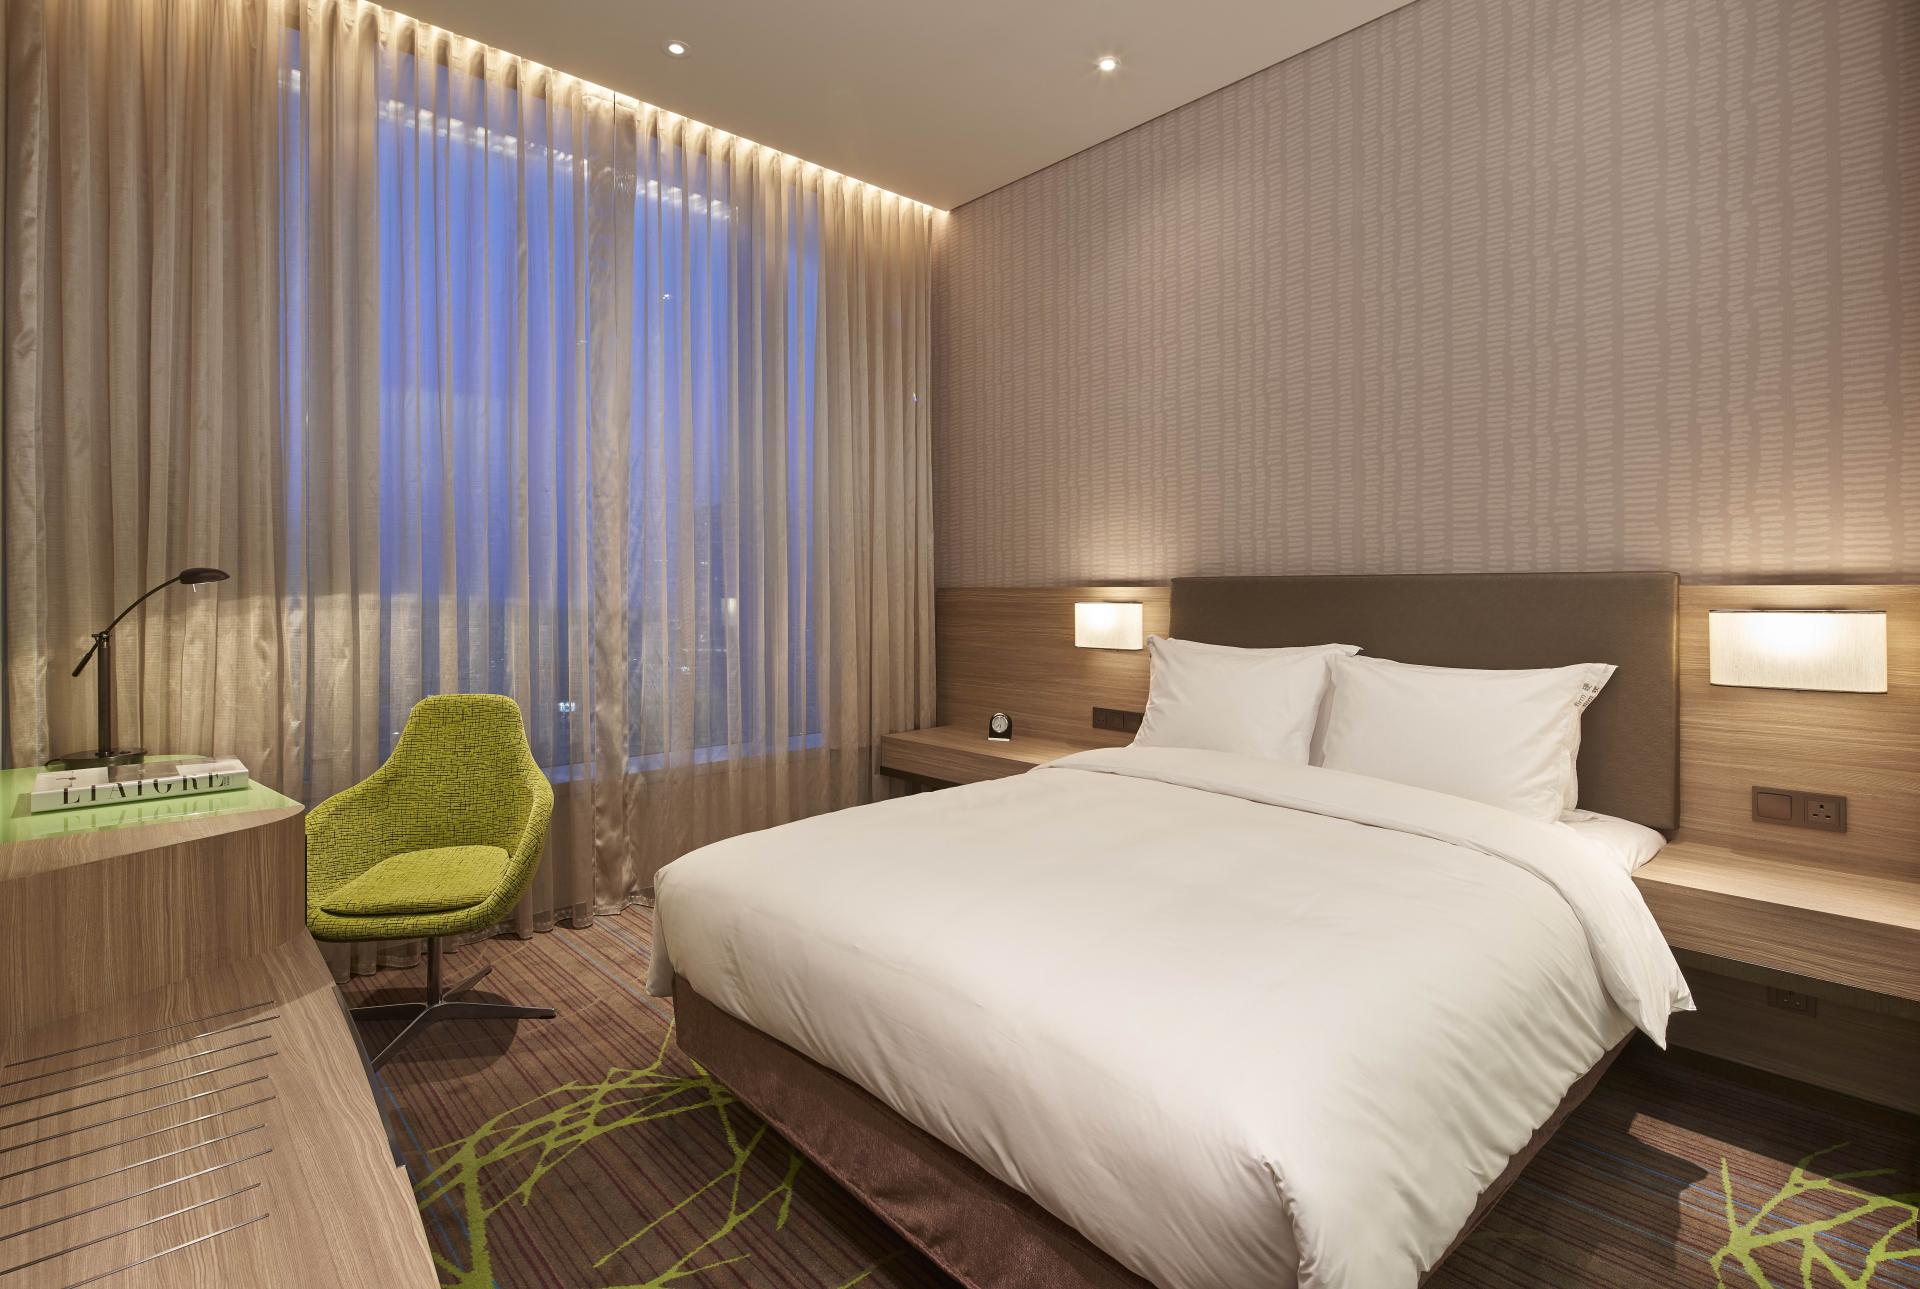 MUSE Hotel Awards 2022 Winner - Holiday Inn Express Hong Kong Kowloon CBD2